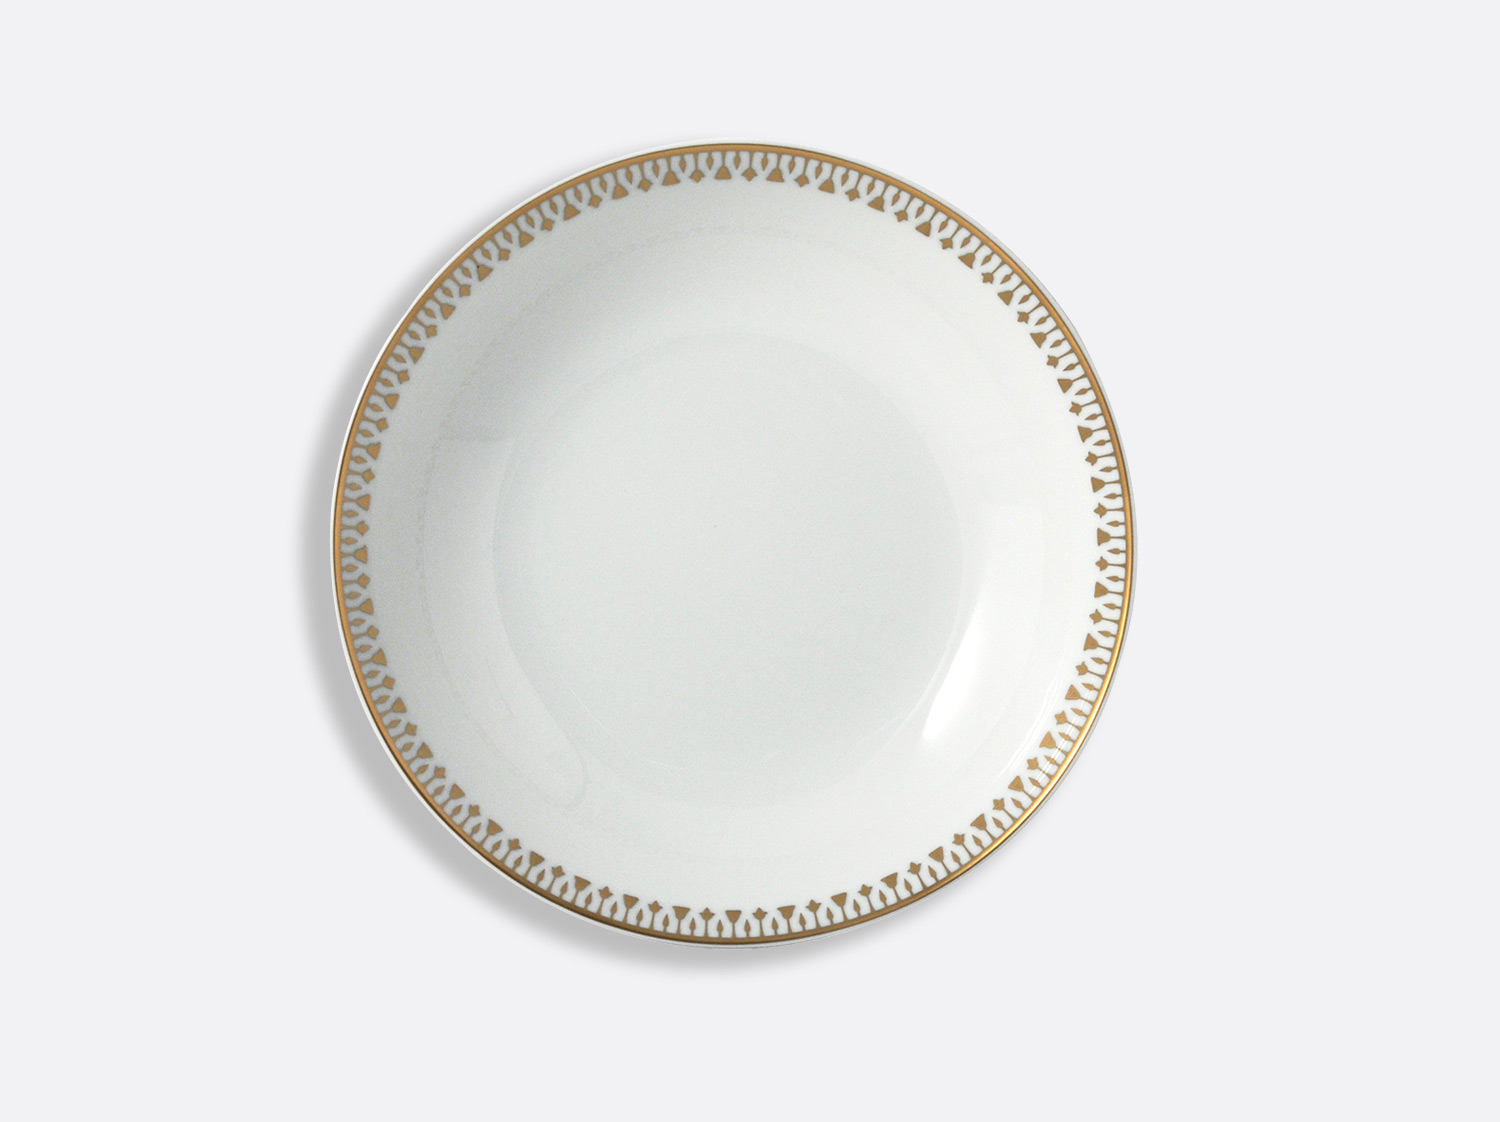 Assiette creuse 19 cm en porcelaine de la collection Soleil levant Bernardaud